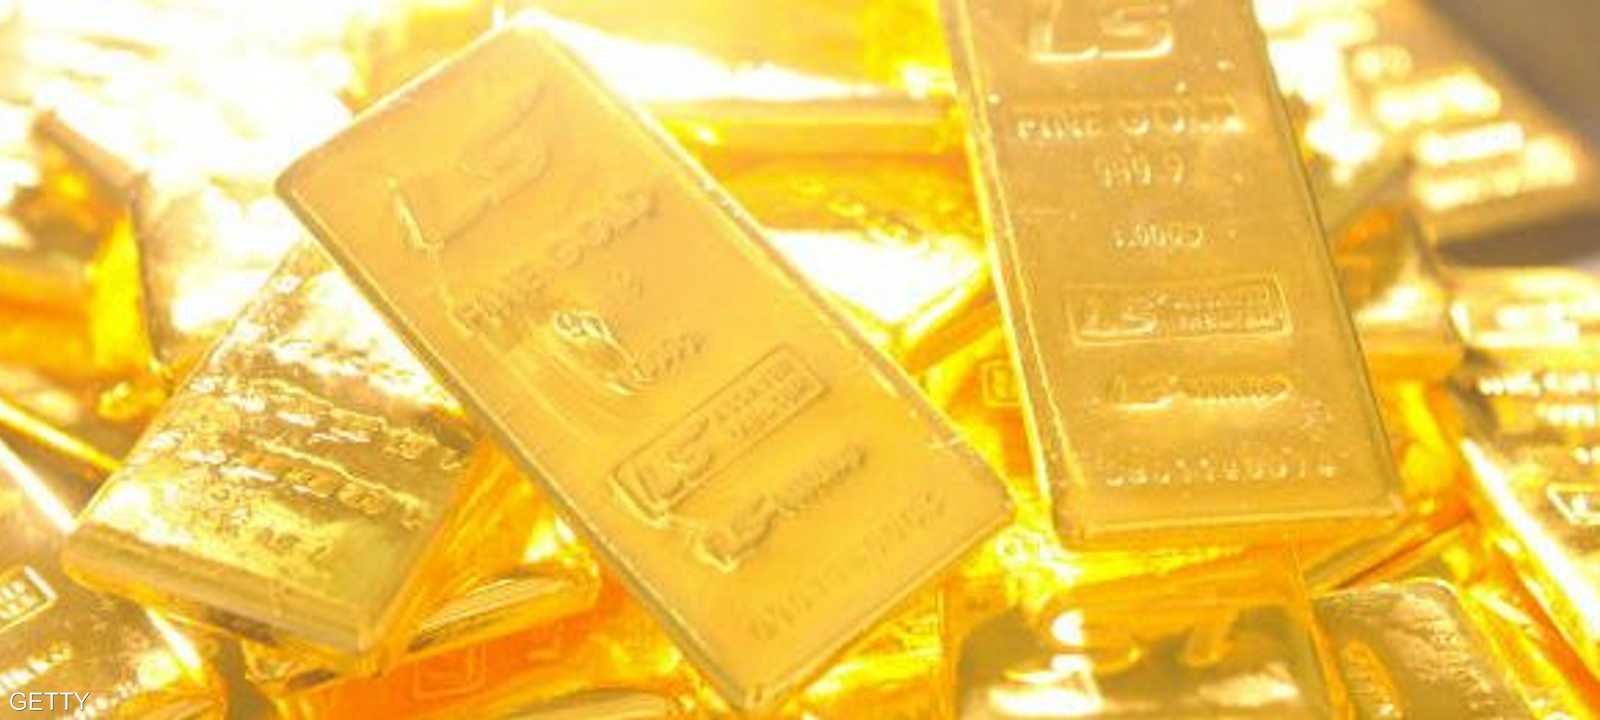 تفاؤل بشأن احتمال ارتفاع الأسعار الذهب.